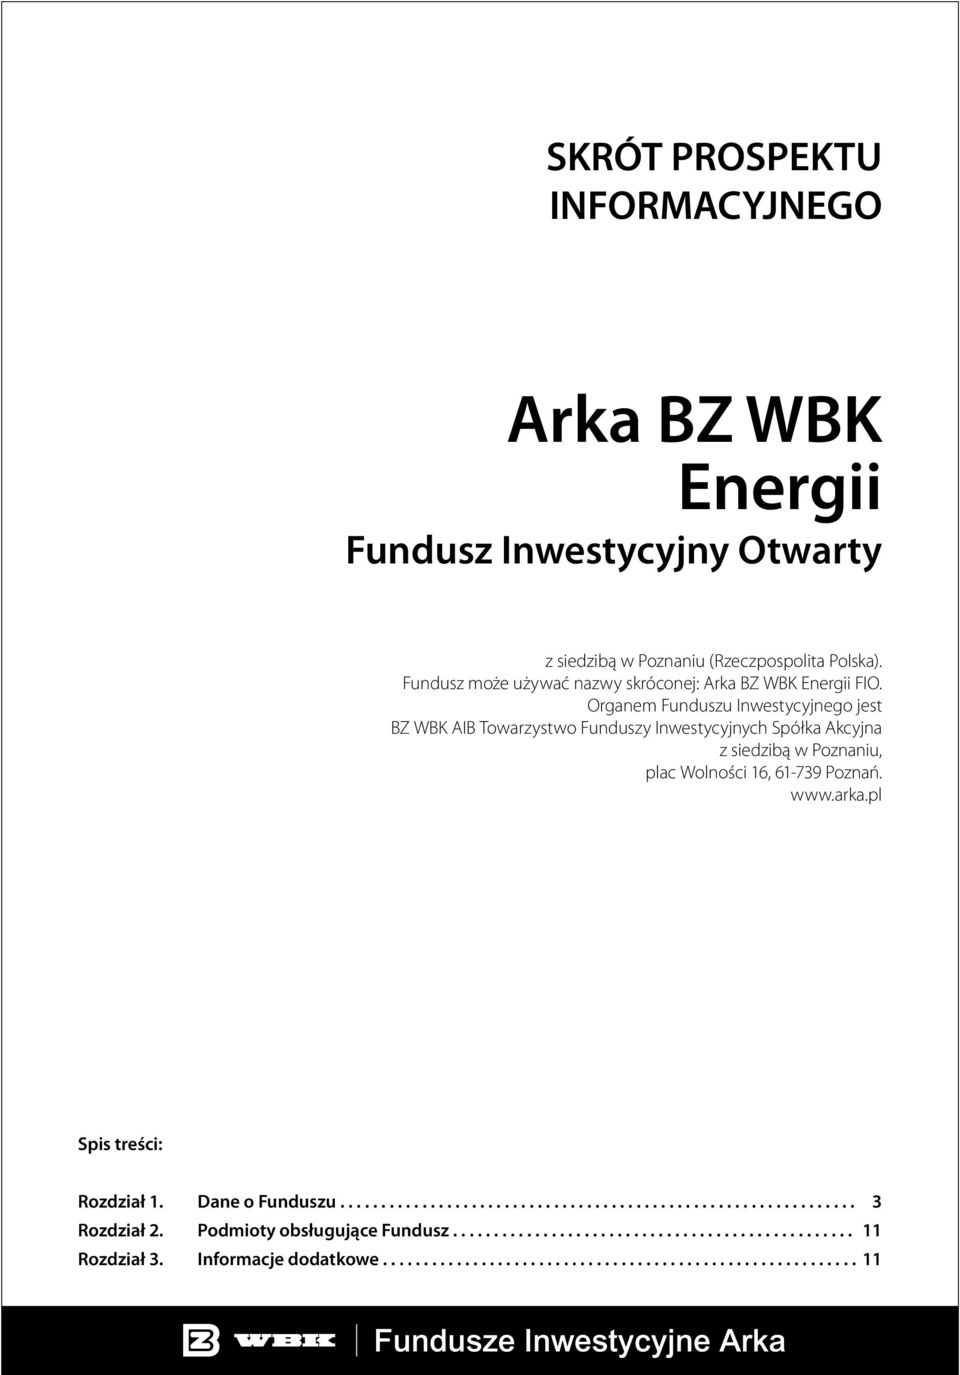 Organem Funduszu Inwestycyjnego jest BZ WBK AIB Towarzystwo Funduszy Inwestycyjnych Spółka Akcyjna z siedzibą w Poznaniu, plac Wolności 16, 61-739 Poznań. www.